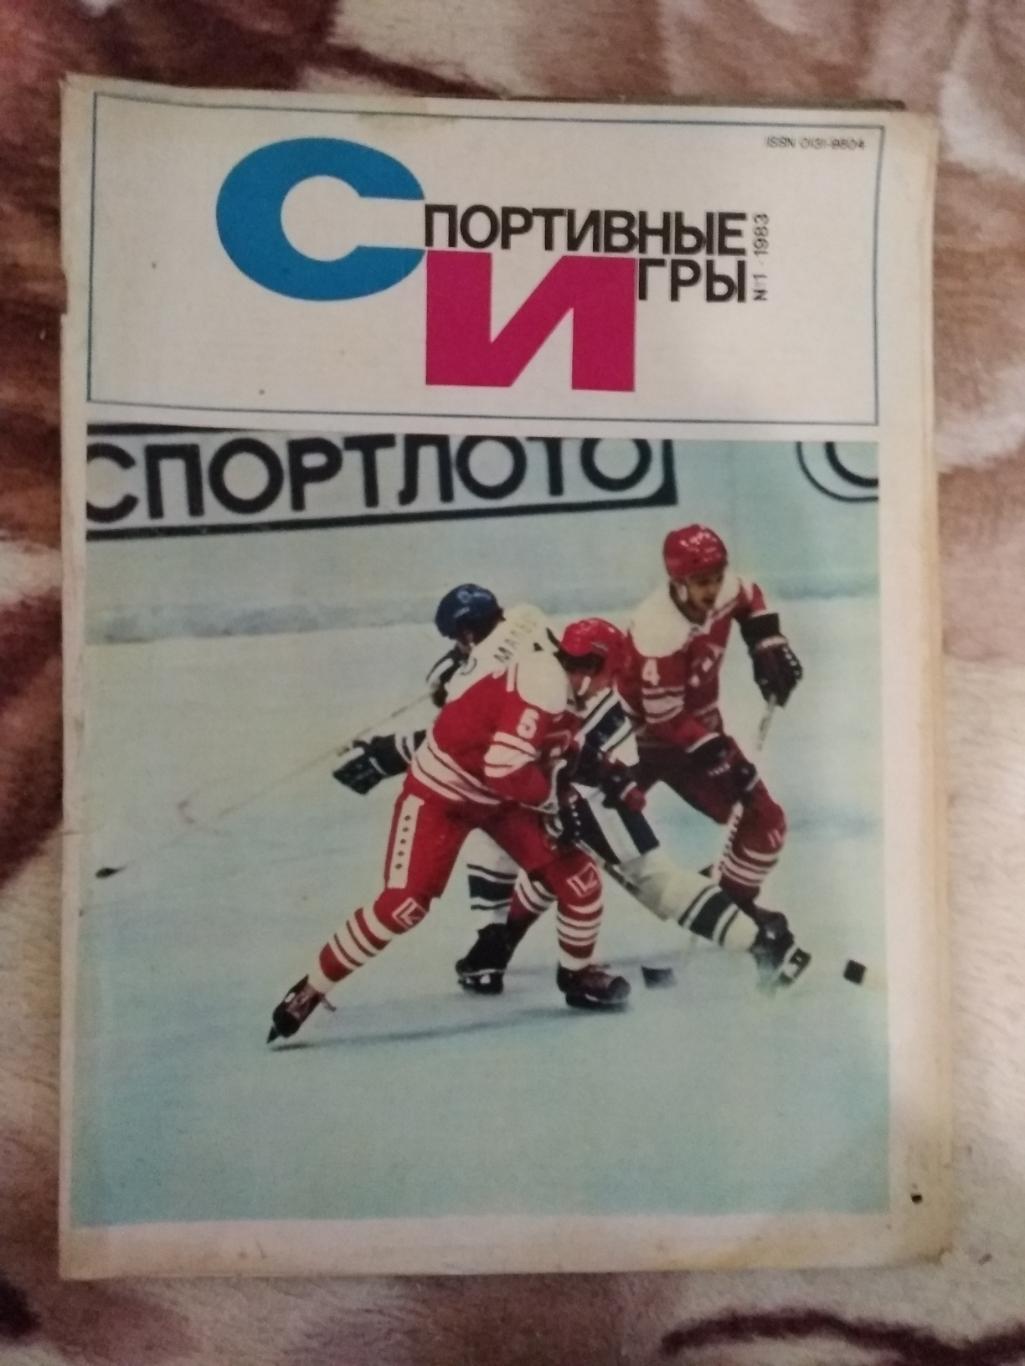 Журнал.Спортивные игры № 1 1983 г.